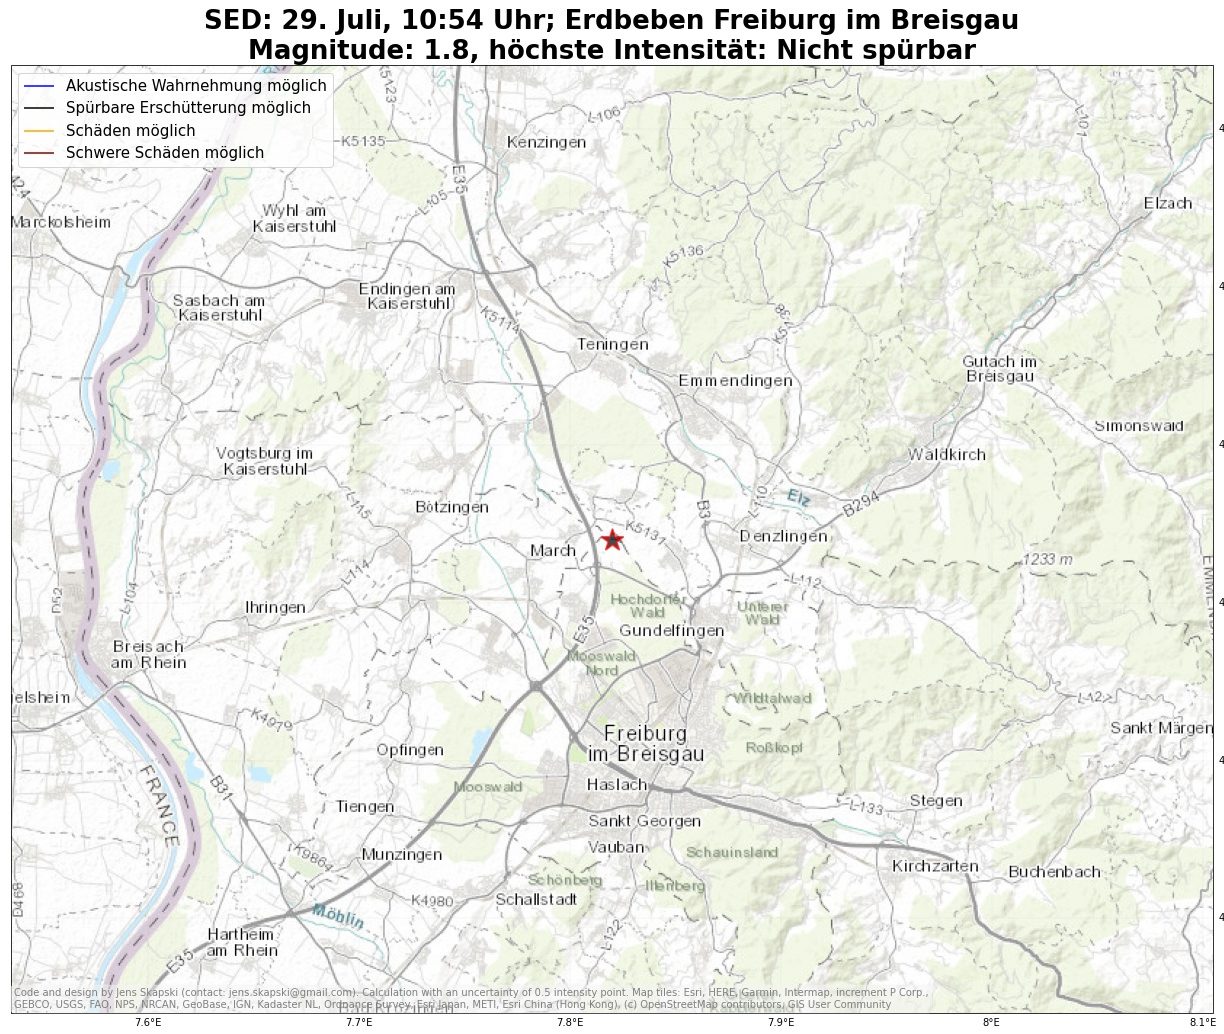 Kleines Erdbeben am Freitag im Norden von Freiburg